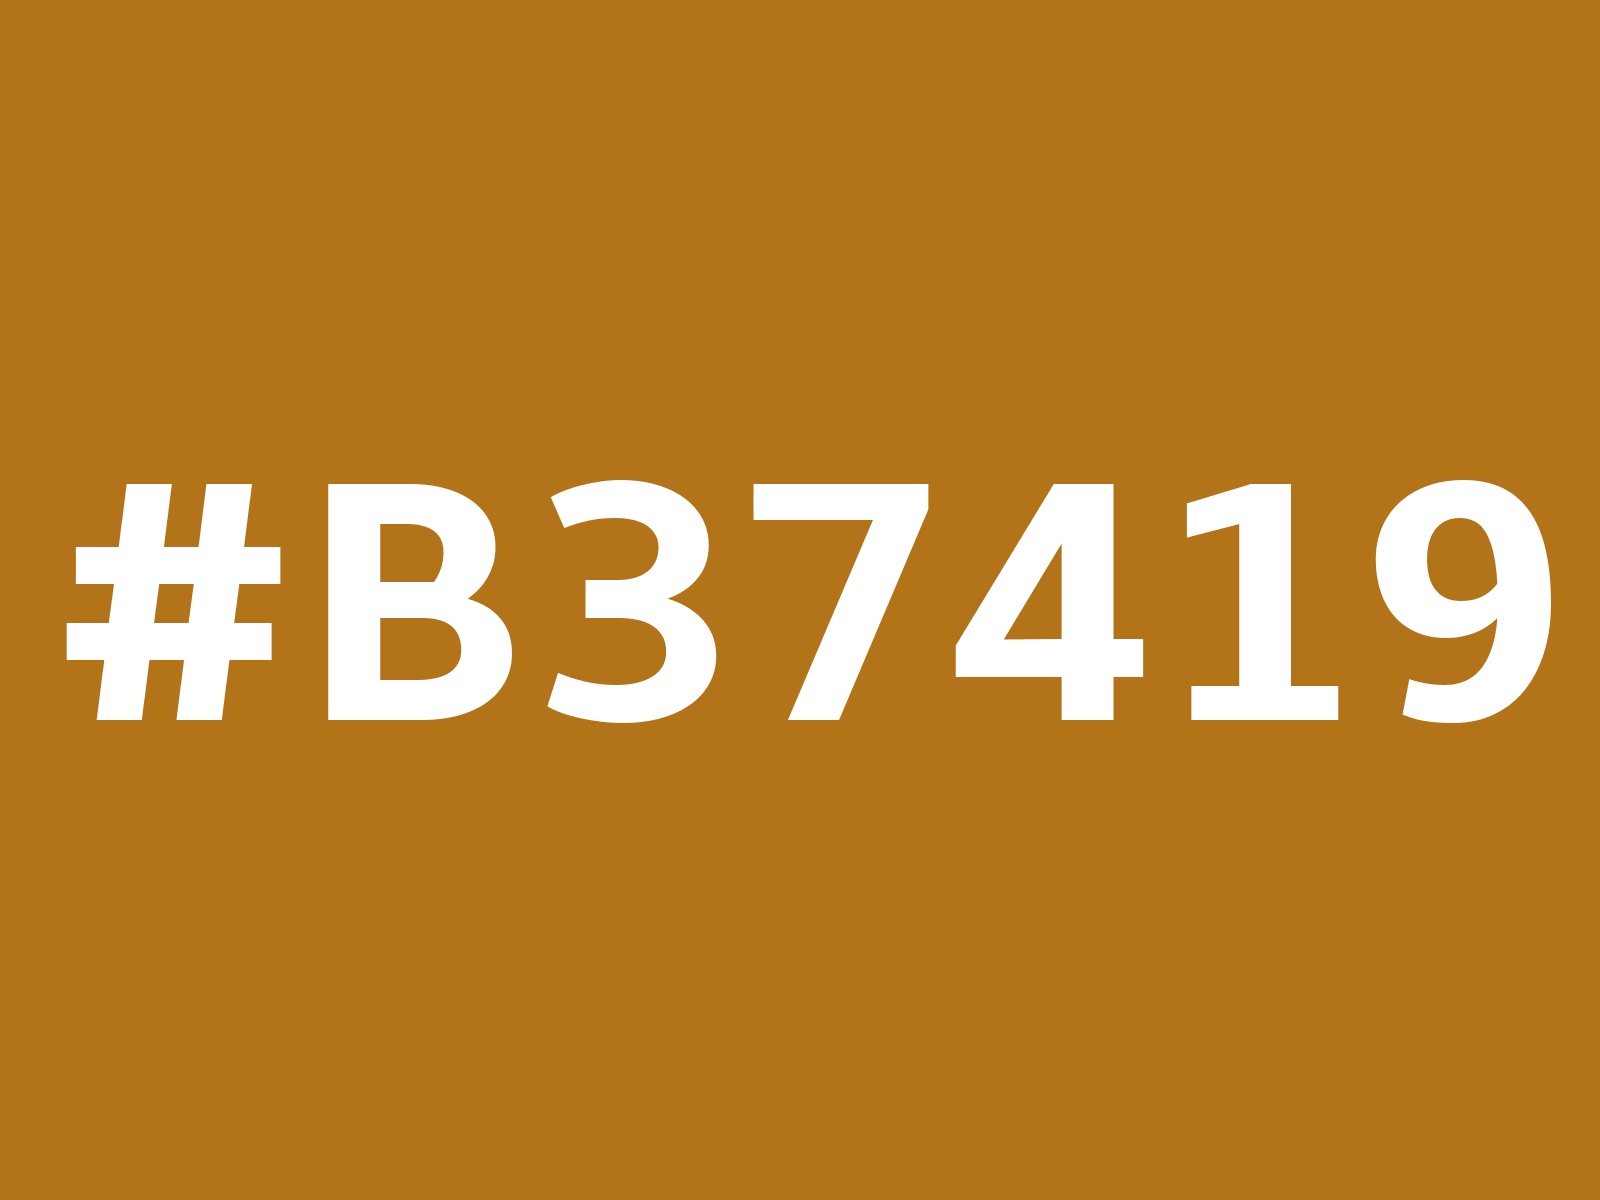 b37419